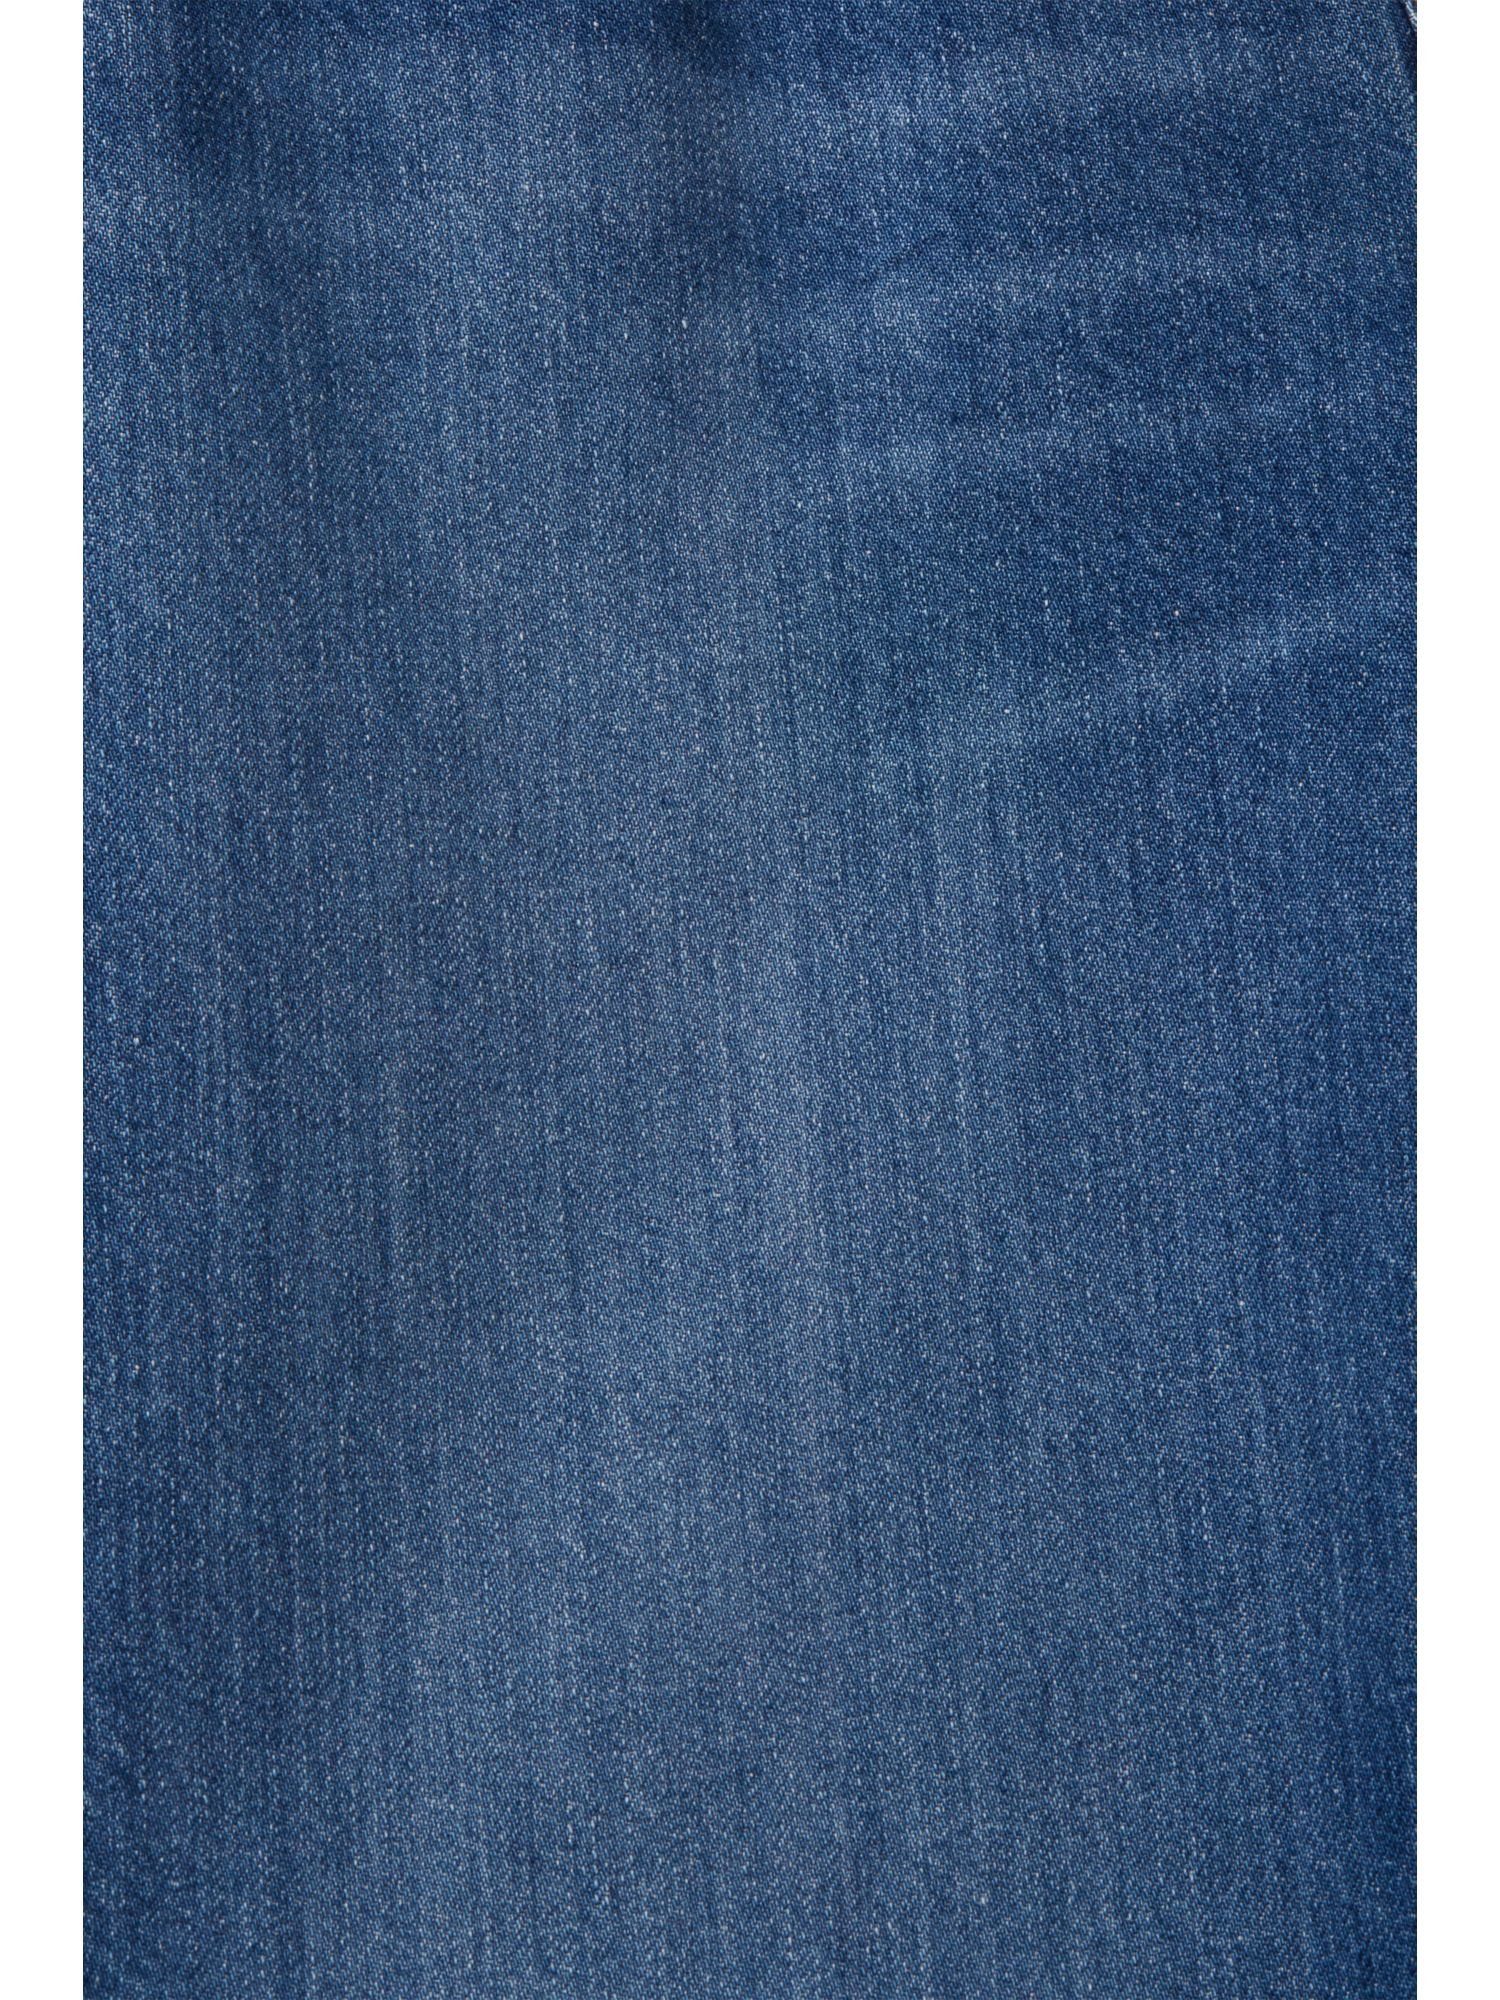 Passform Jeans mit und hohem Bund Esprit WASHED 7/8-Jeans MEDIUM BLUE gerader